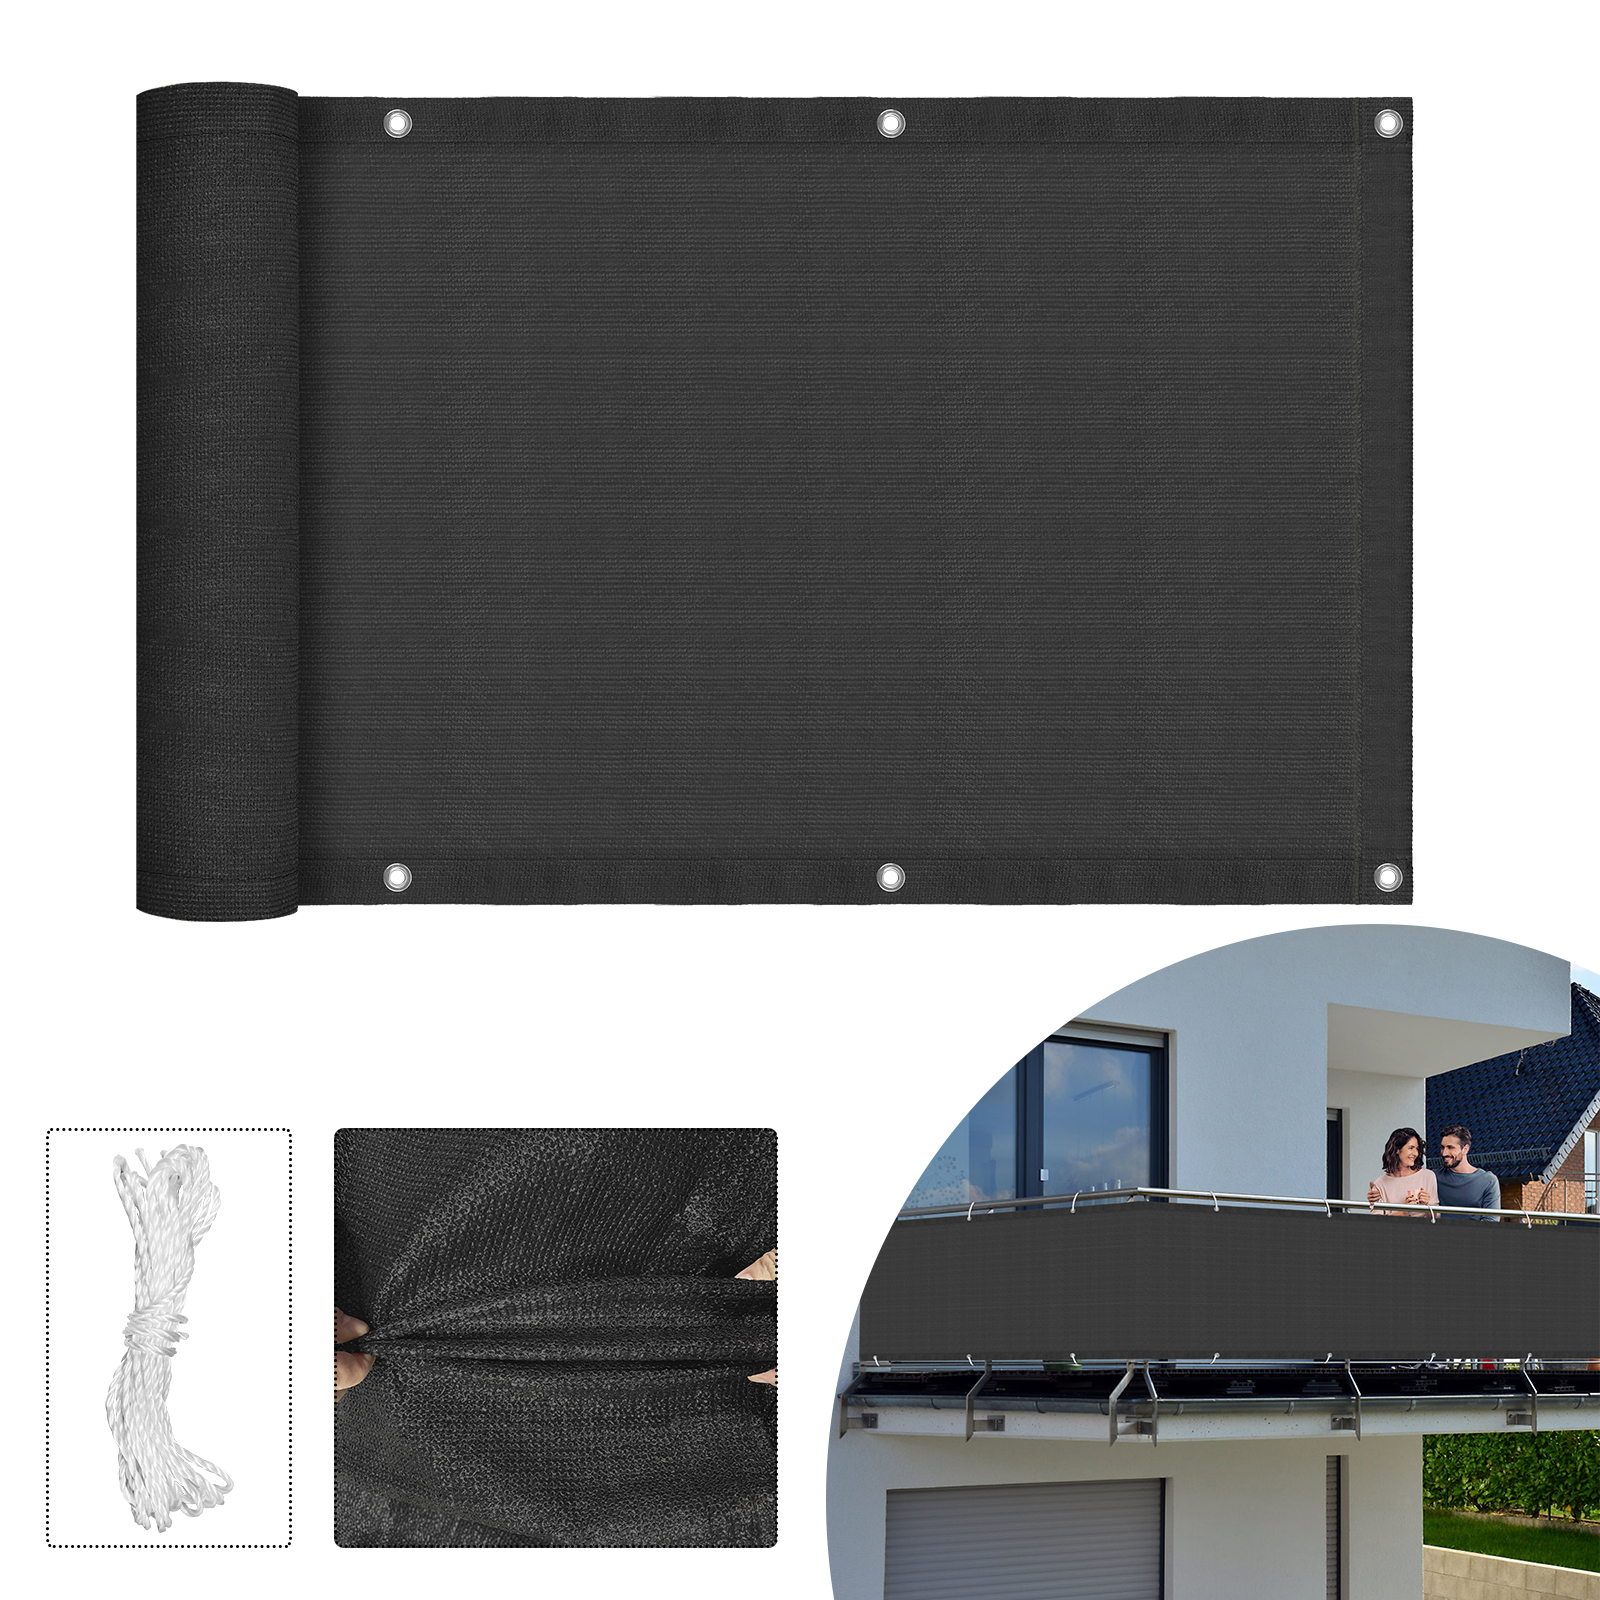 Grau XMTECH Balkon Sichtschutz Balkonverkleidung HDPE Balkonabdeckung 180 g/m² Balkonumspannungen Windschutz 75x600cm UV-Schutz,für Balkongeländer Garten